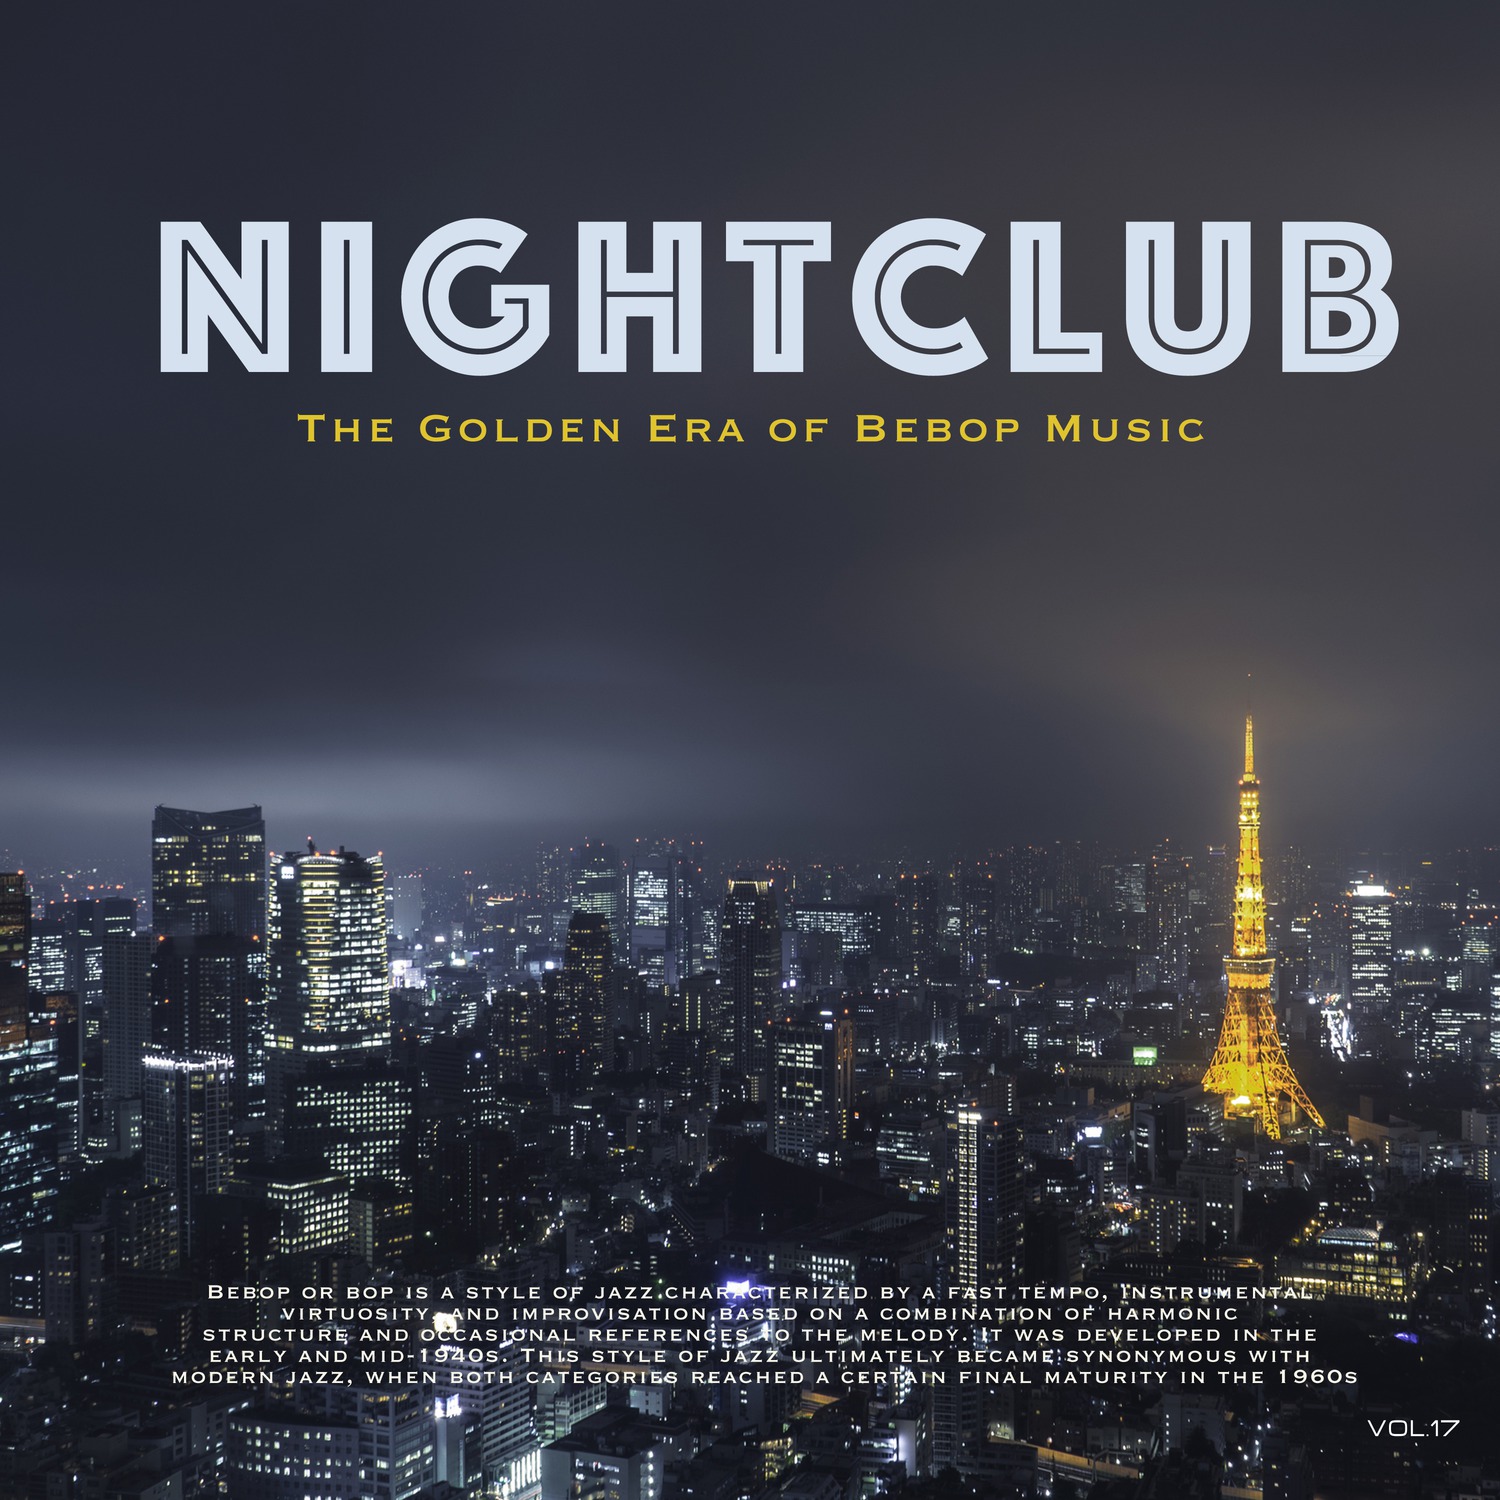 Nightclub, Vol. 17 (The Golden Era of Bebop Music)